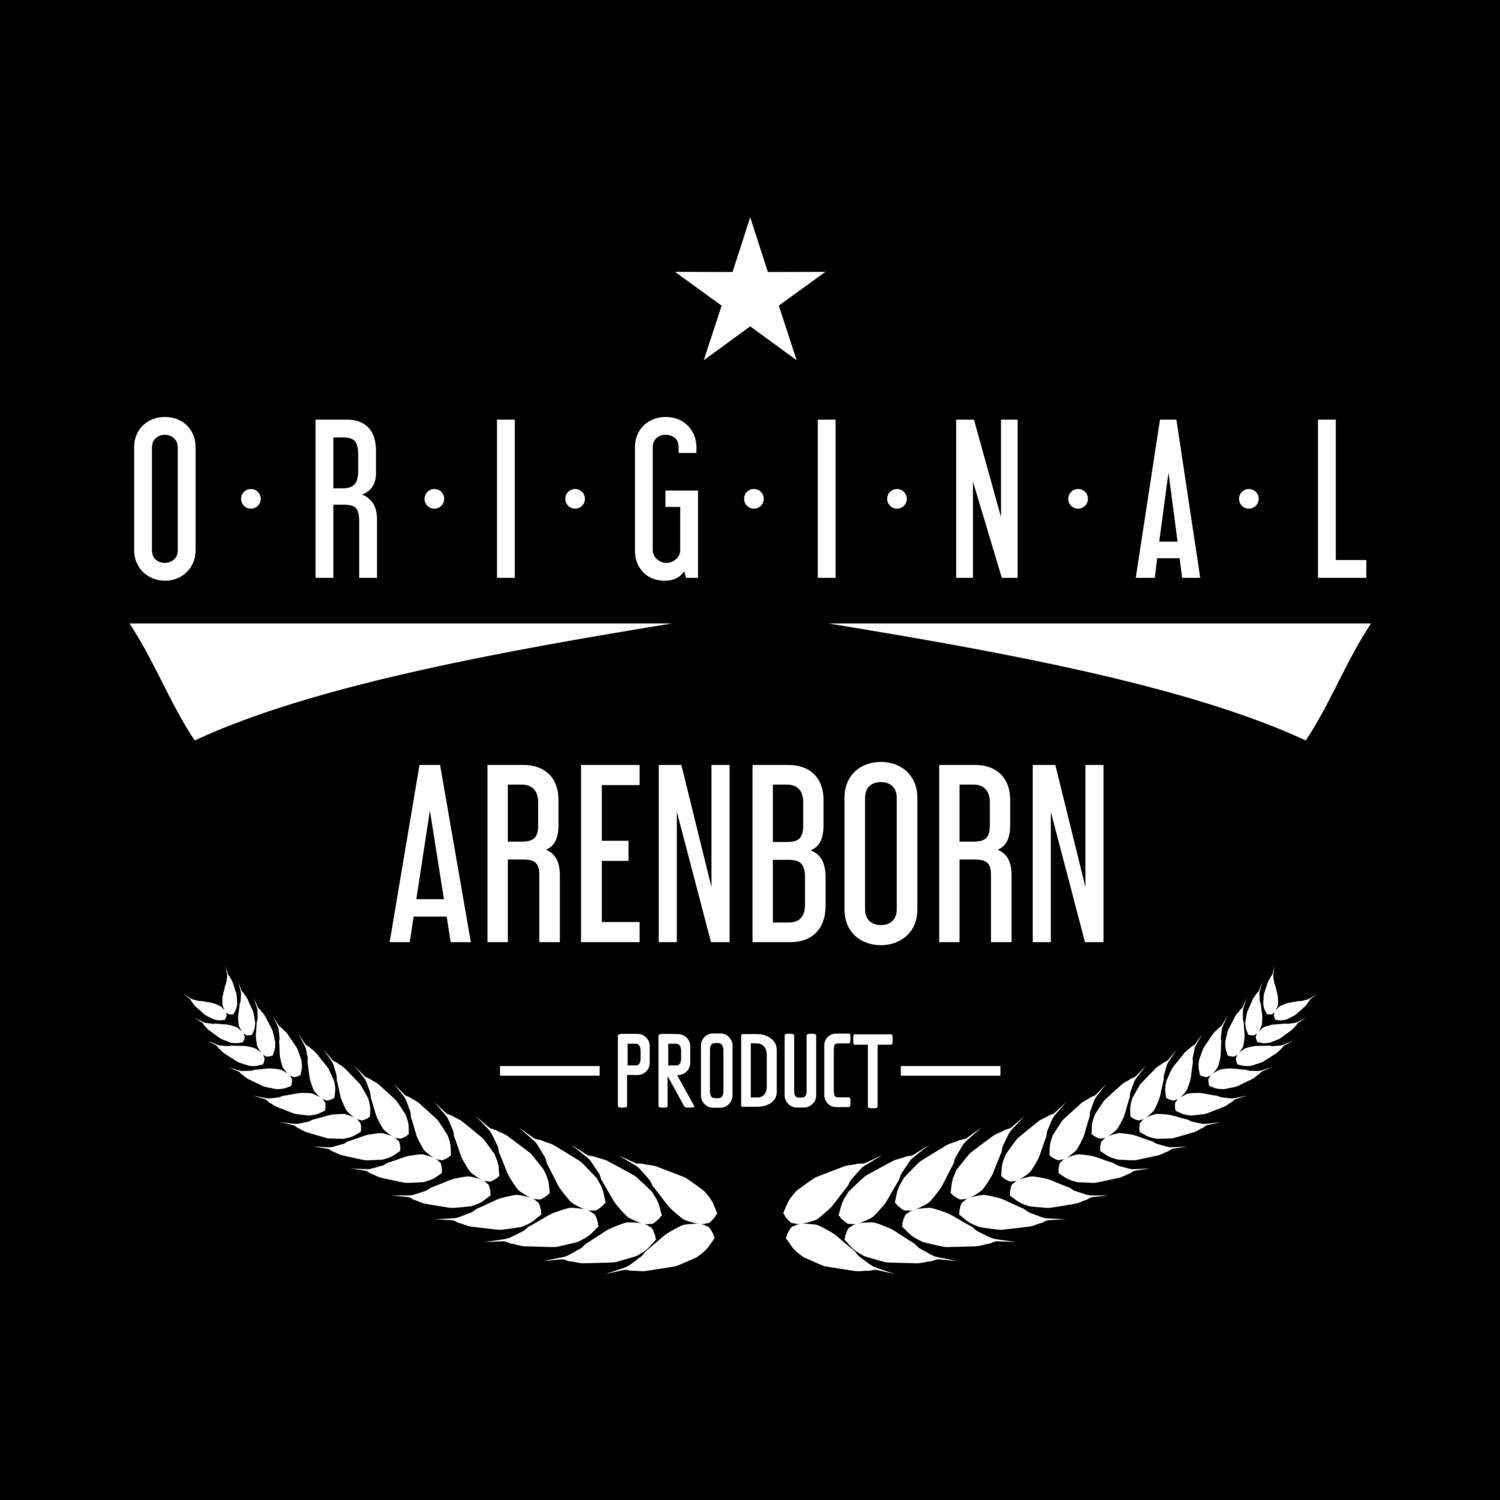 Arenborn T-Shirt »Original Product«